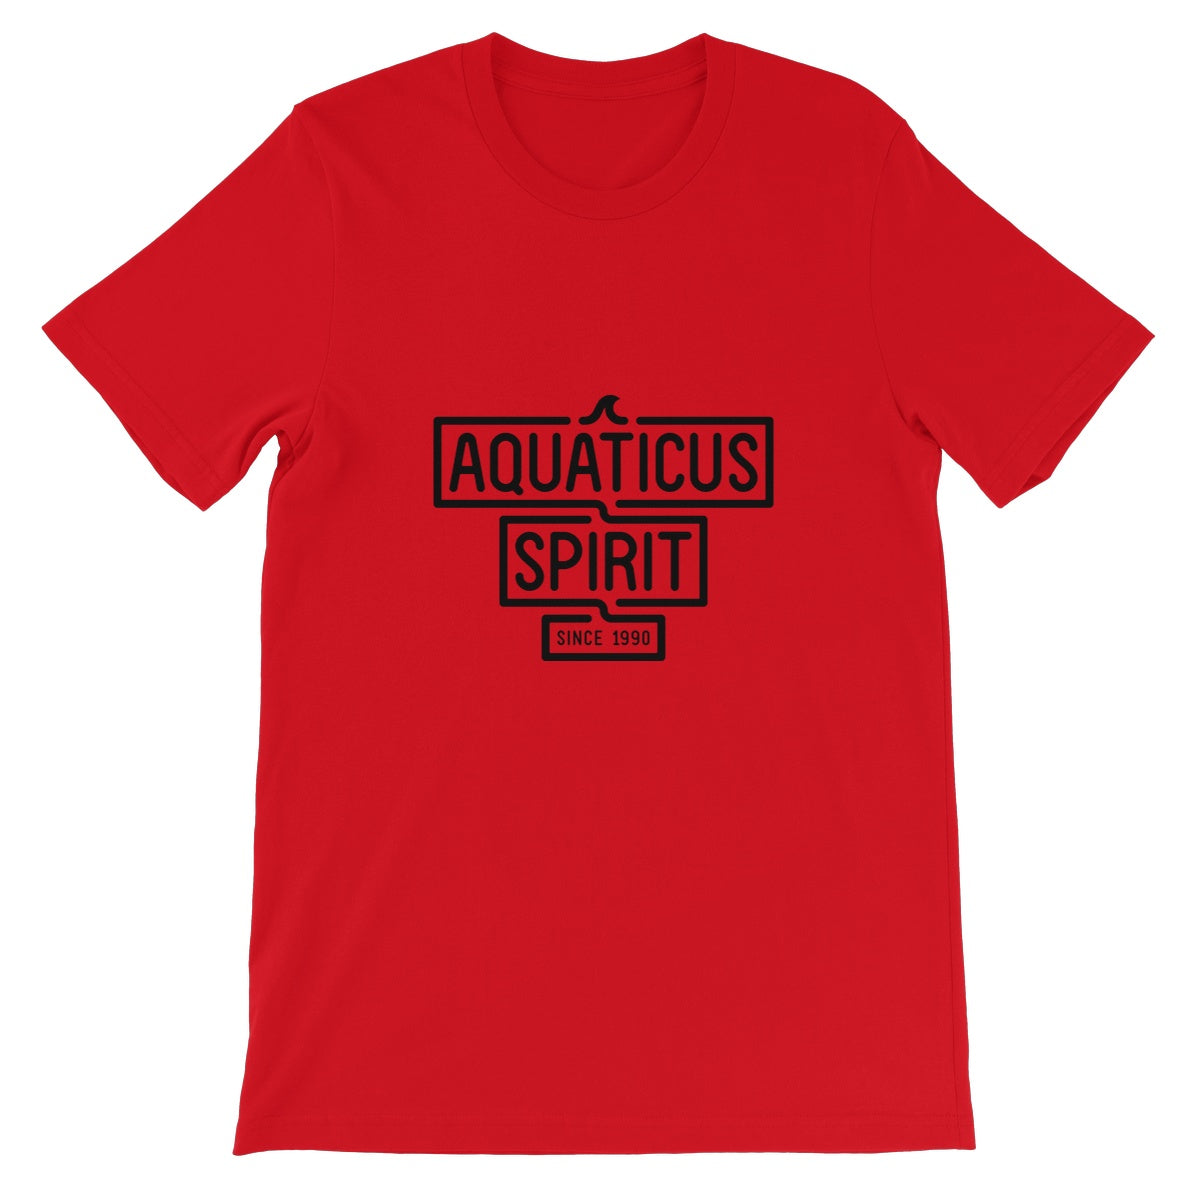 AQUA -  02 - Aquaticus Spirit - Unisex Fine Jersey T-Shirt